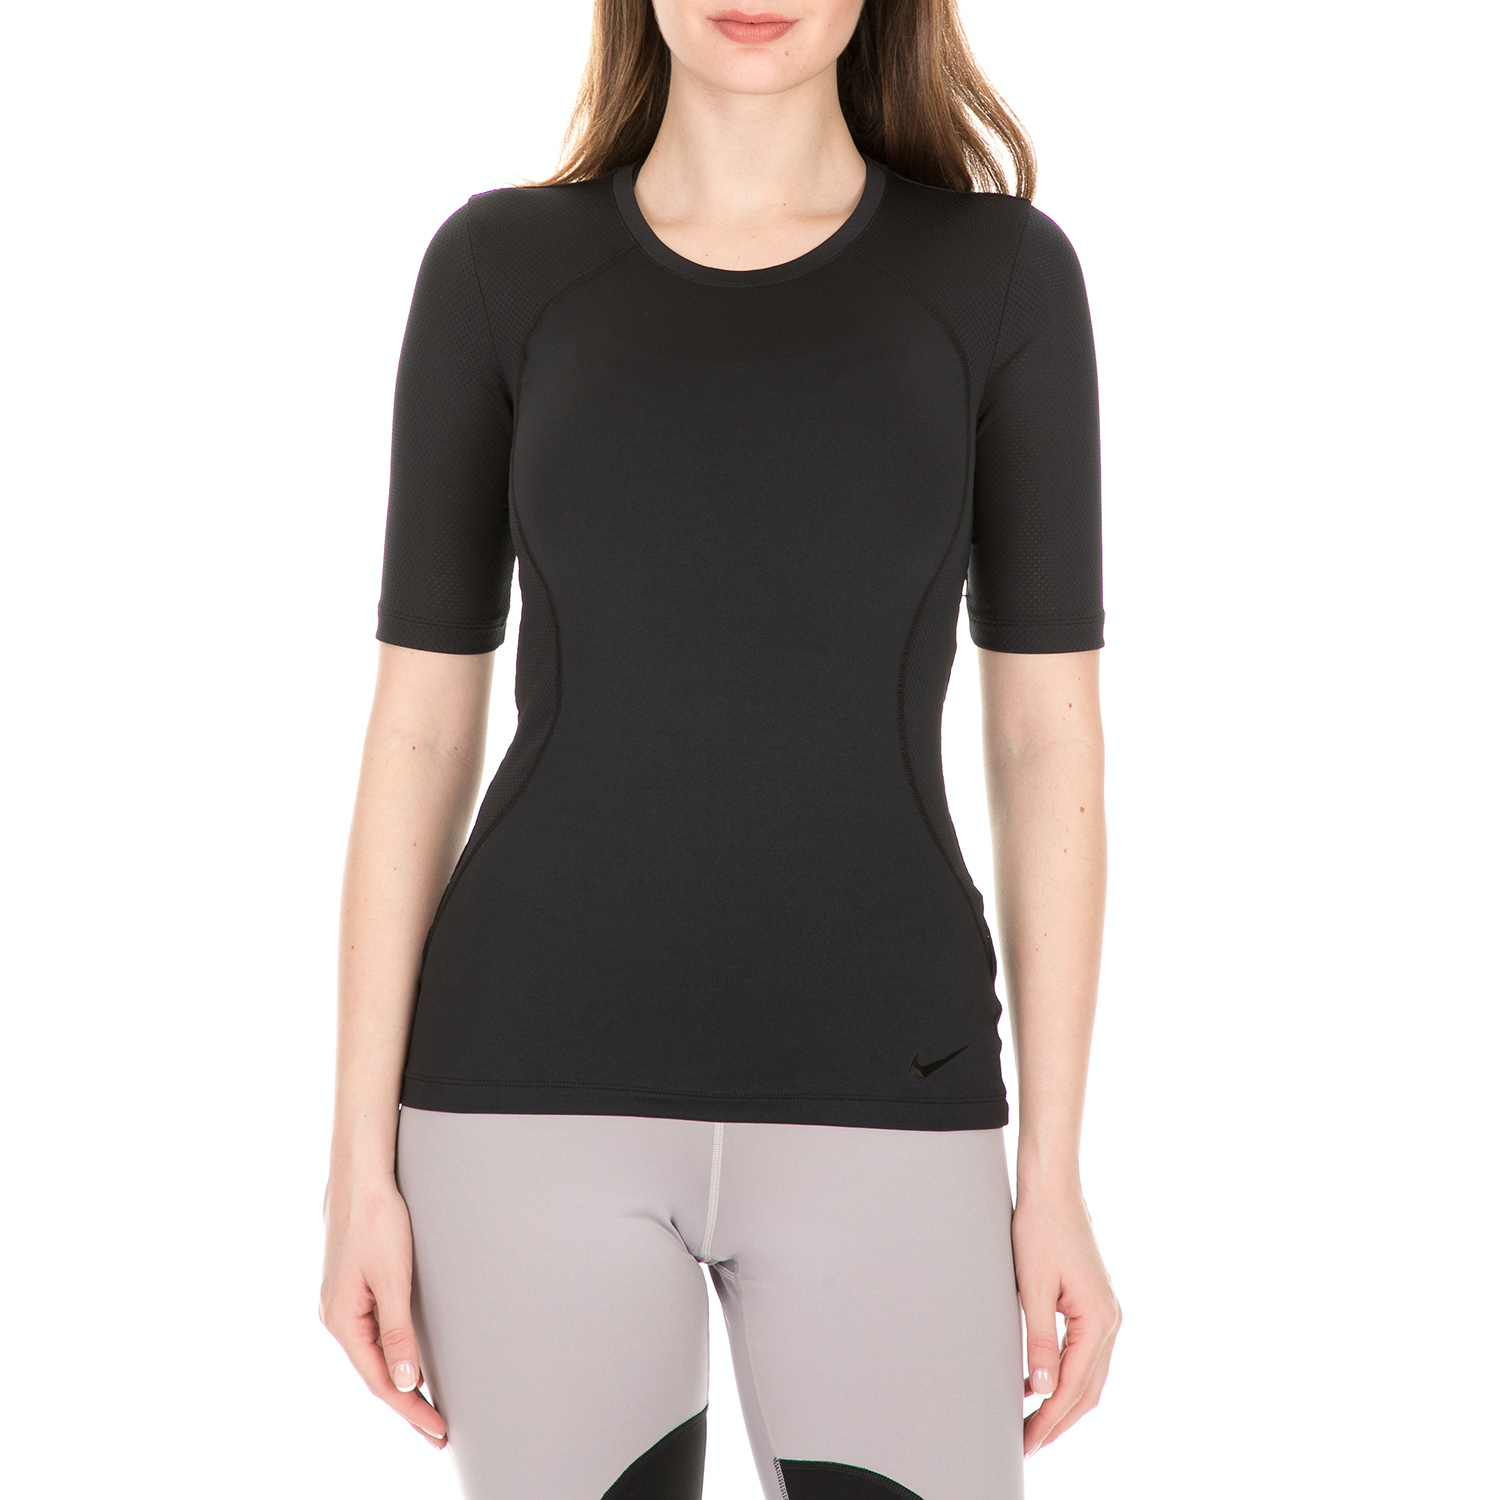 Γυναικεία/Ρούχα/Αθλητικά/T-shirt-Τοπ NIKE - Γυναικεία αθλητική μπλούζα NIKE PRO HPRCL SS TOP μαύρο